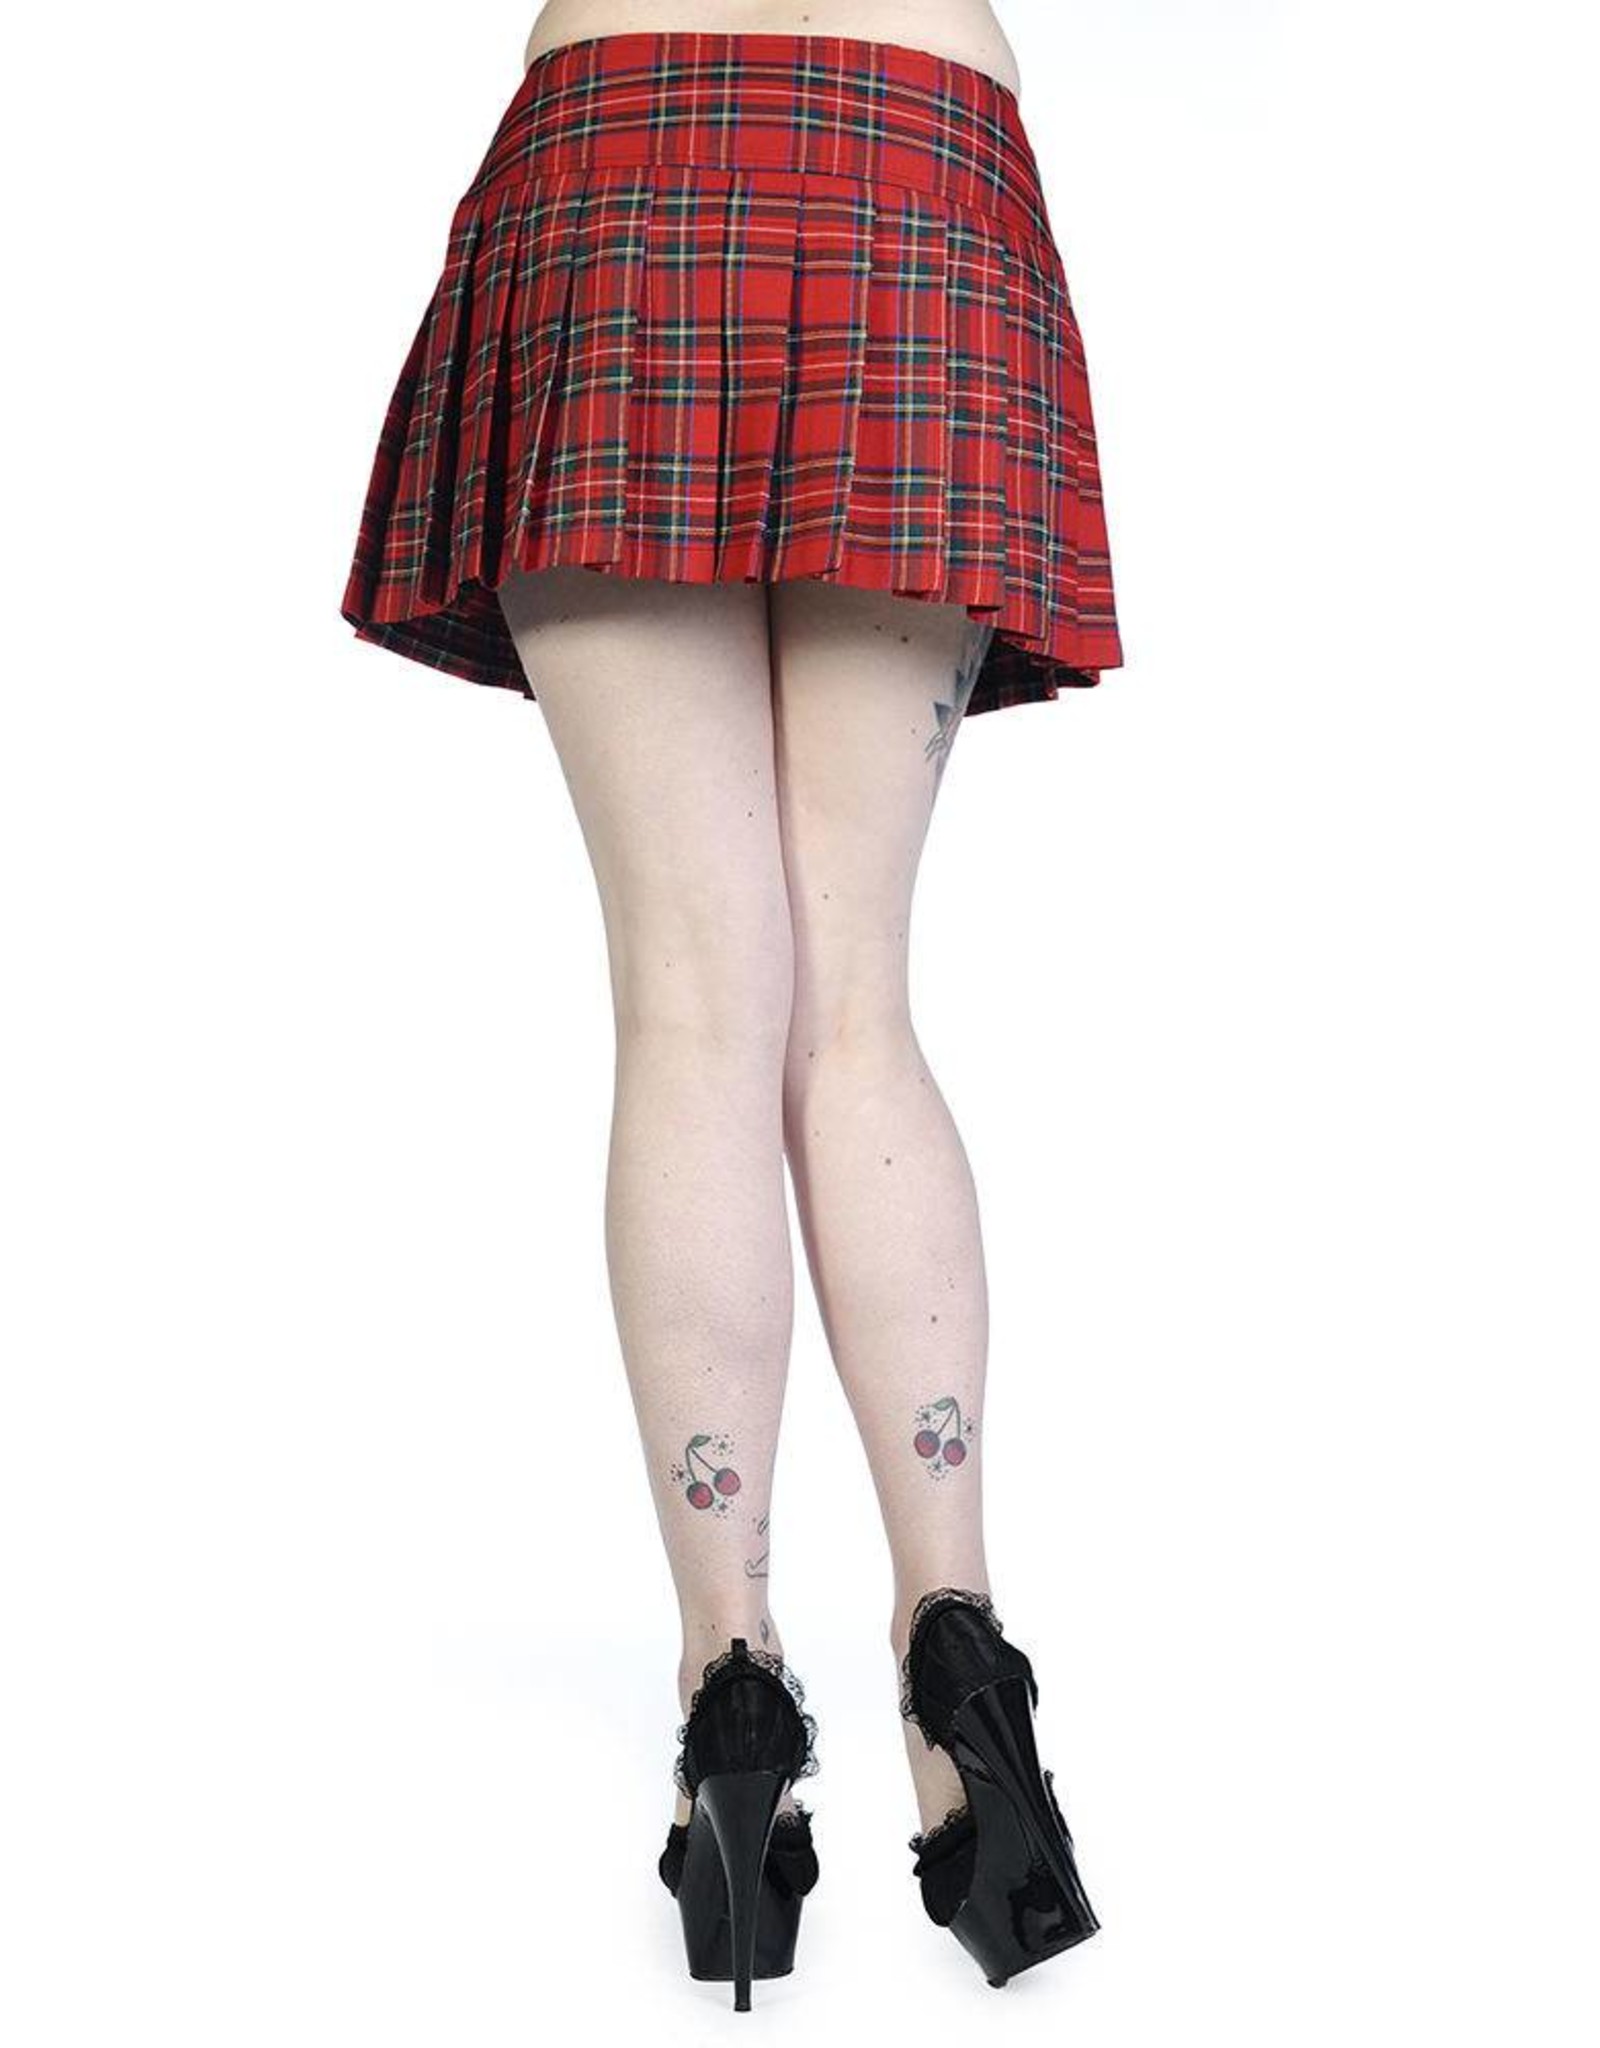 BANNED BANNED - Red Tartan Mini Skirt